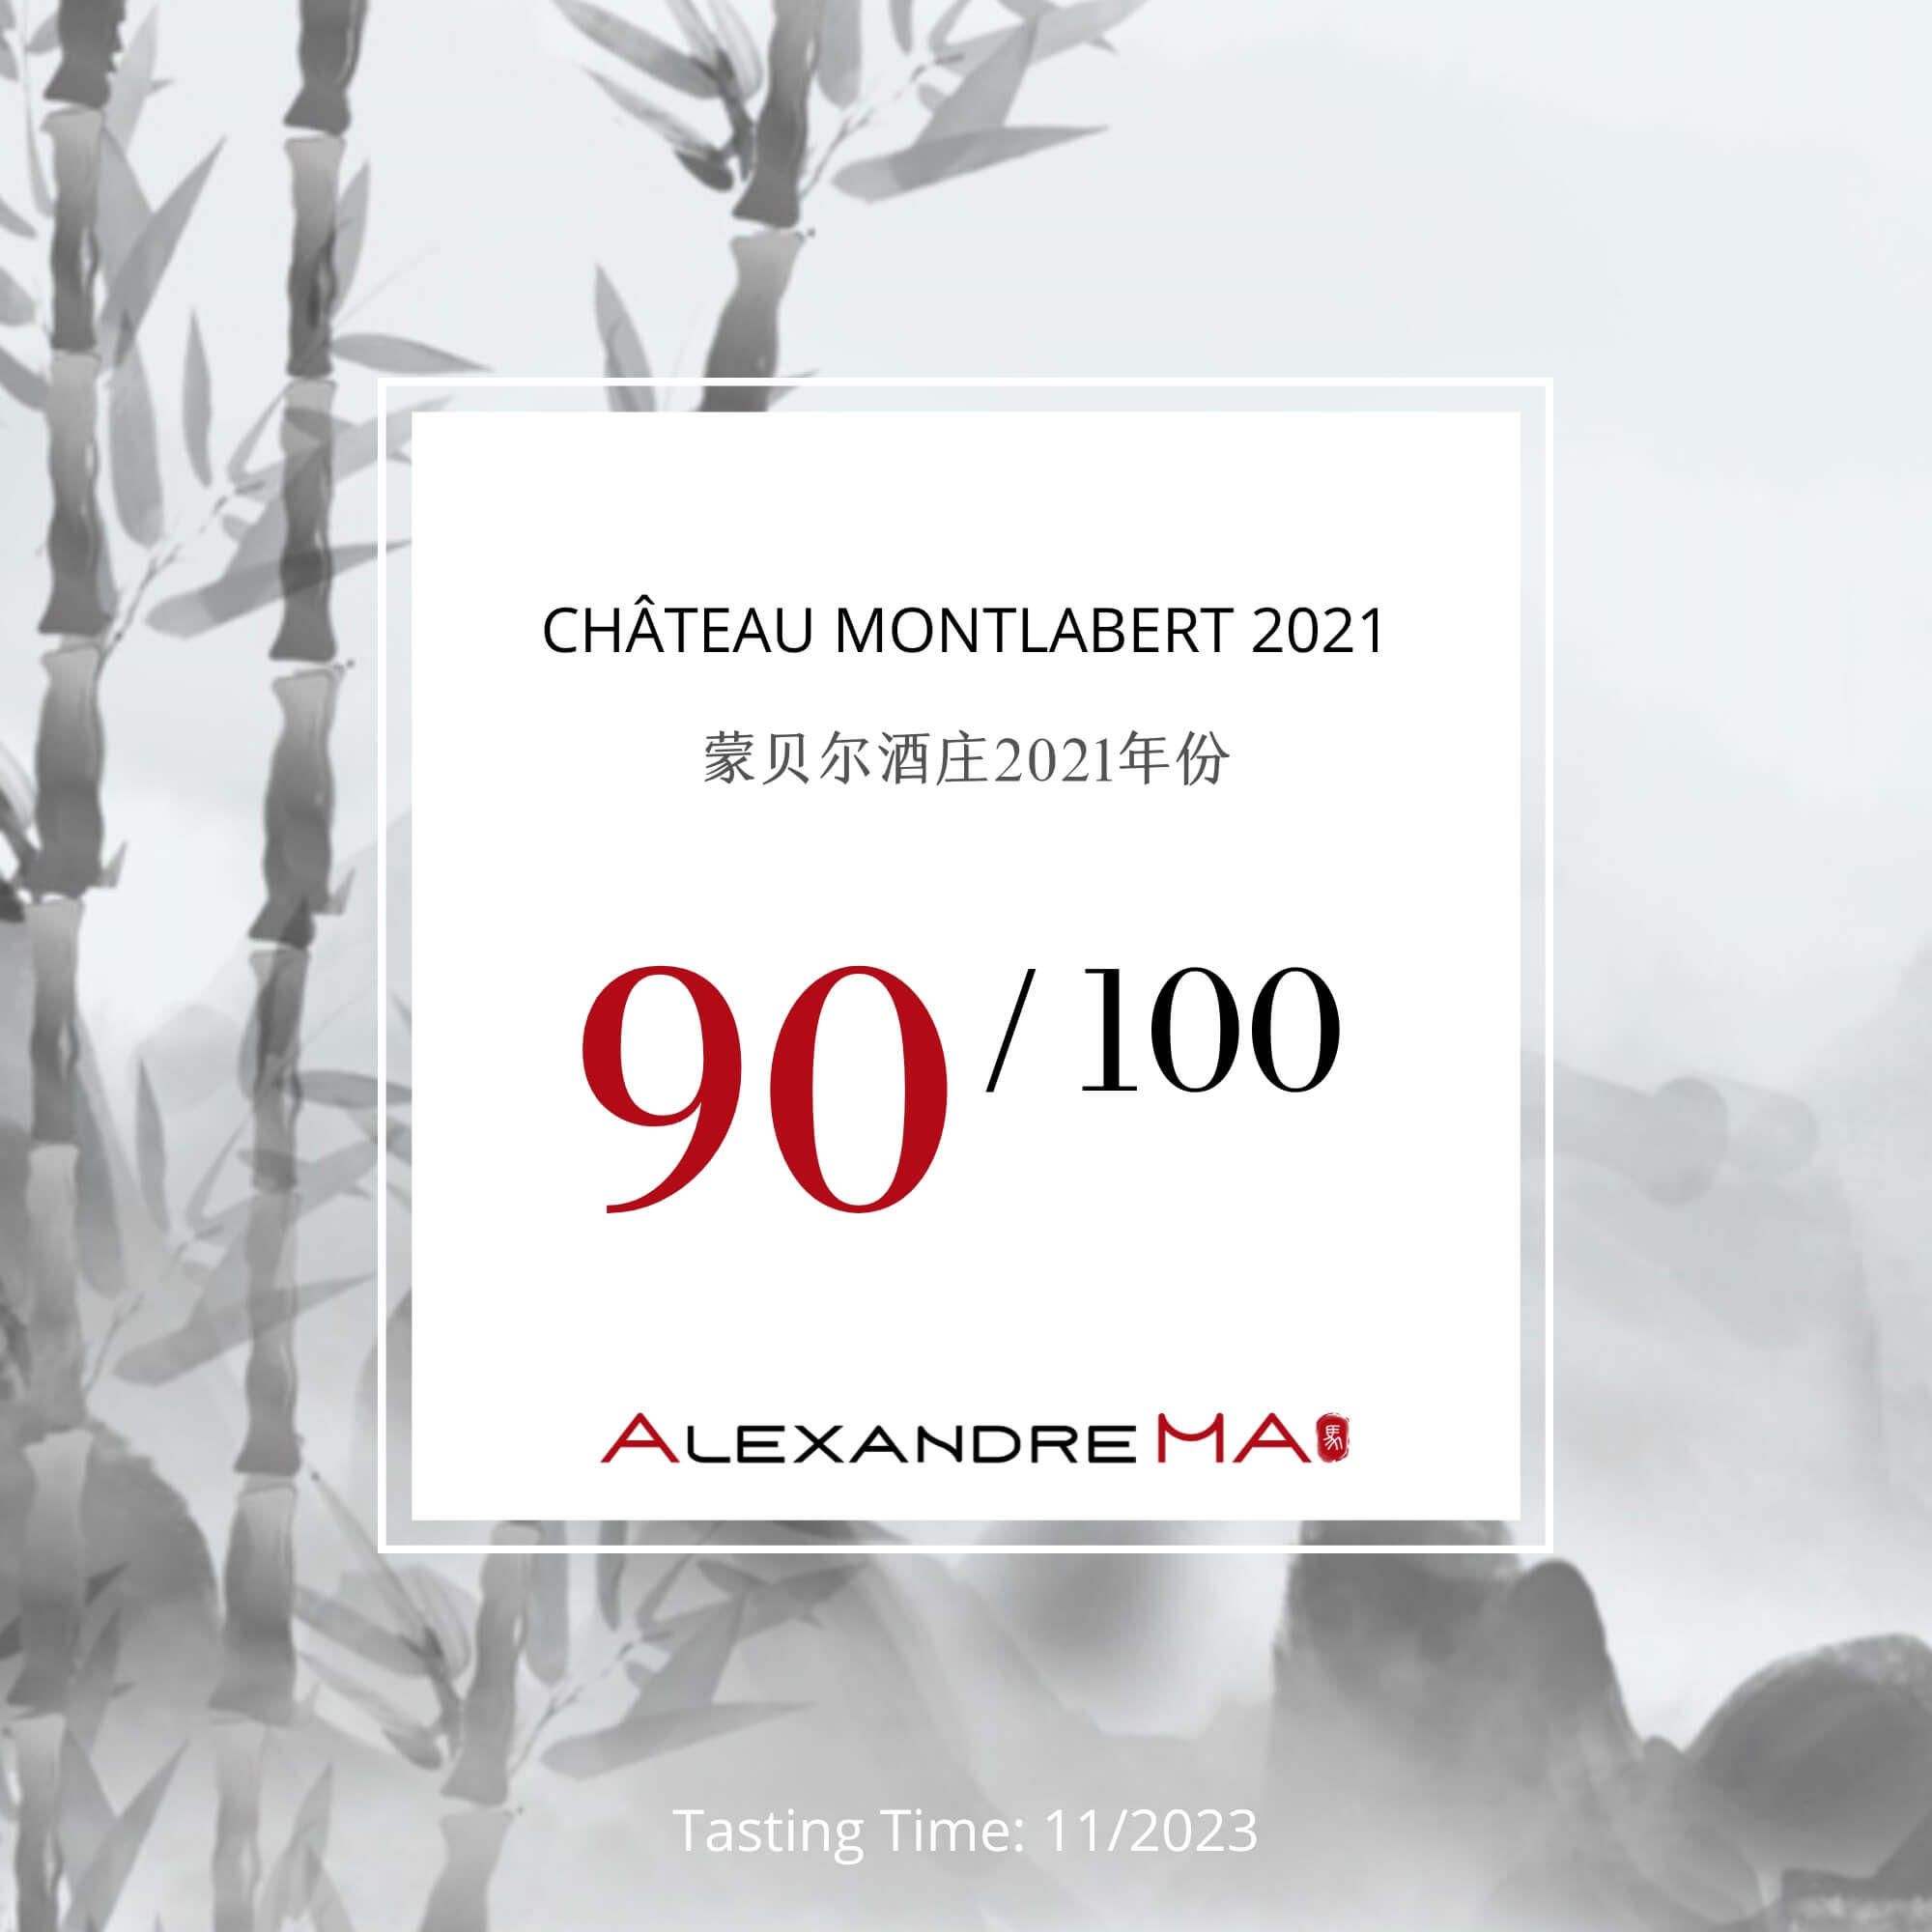 Château Montlabert 2021 - Alexandre MA